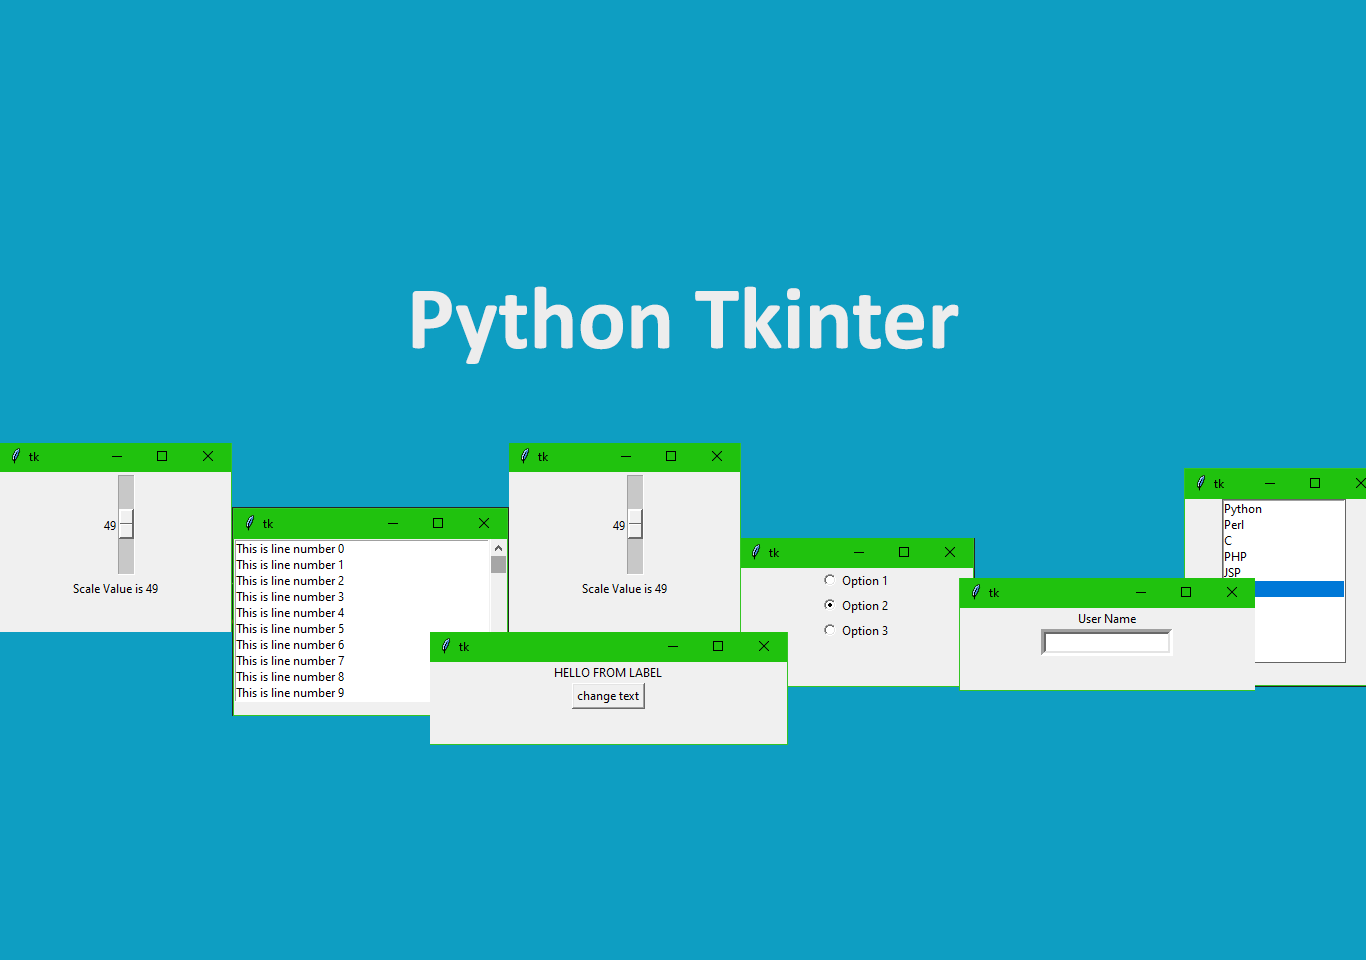 Python tkinter